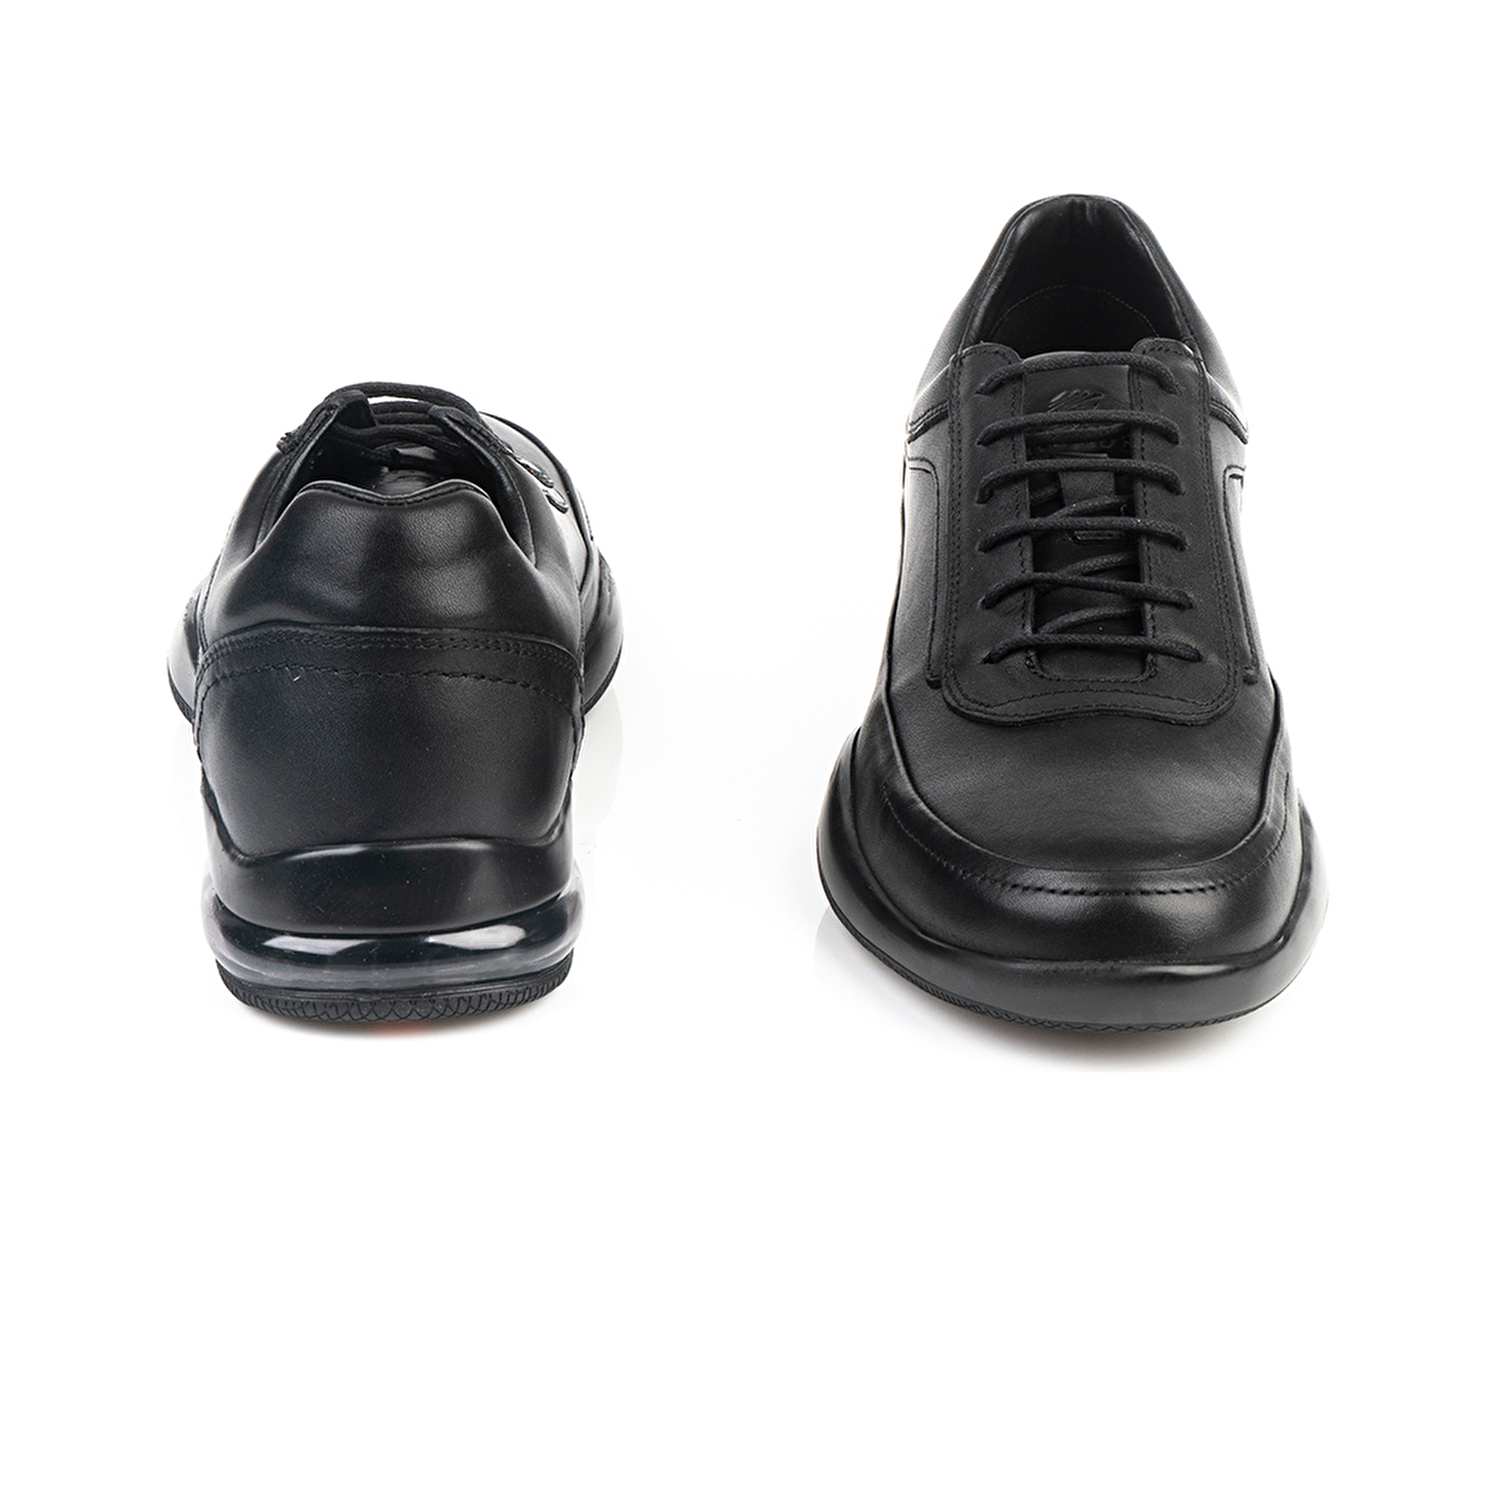 Erkek Ayakkabı Siyah 15121-4